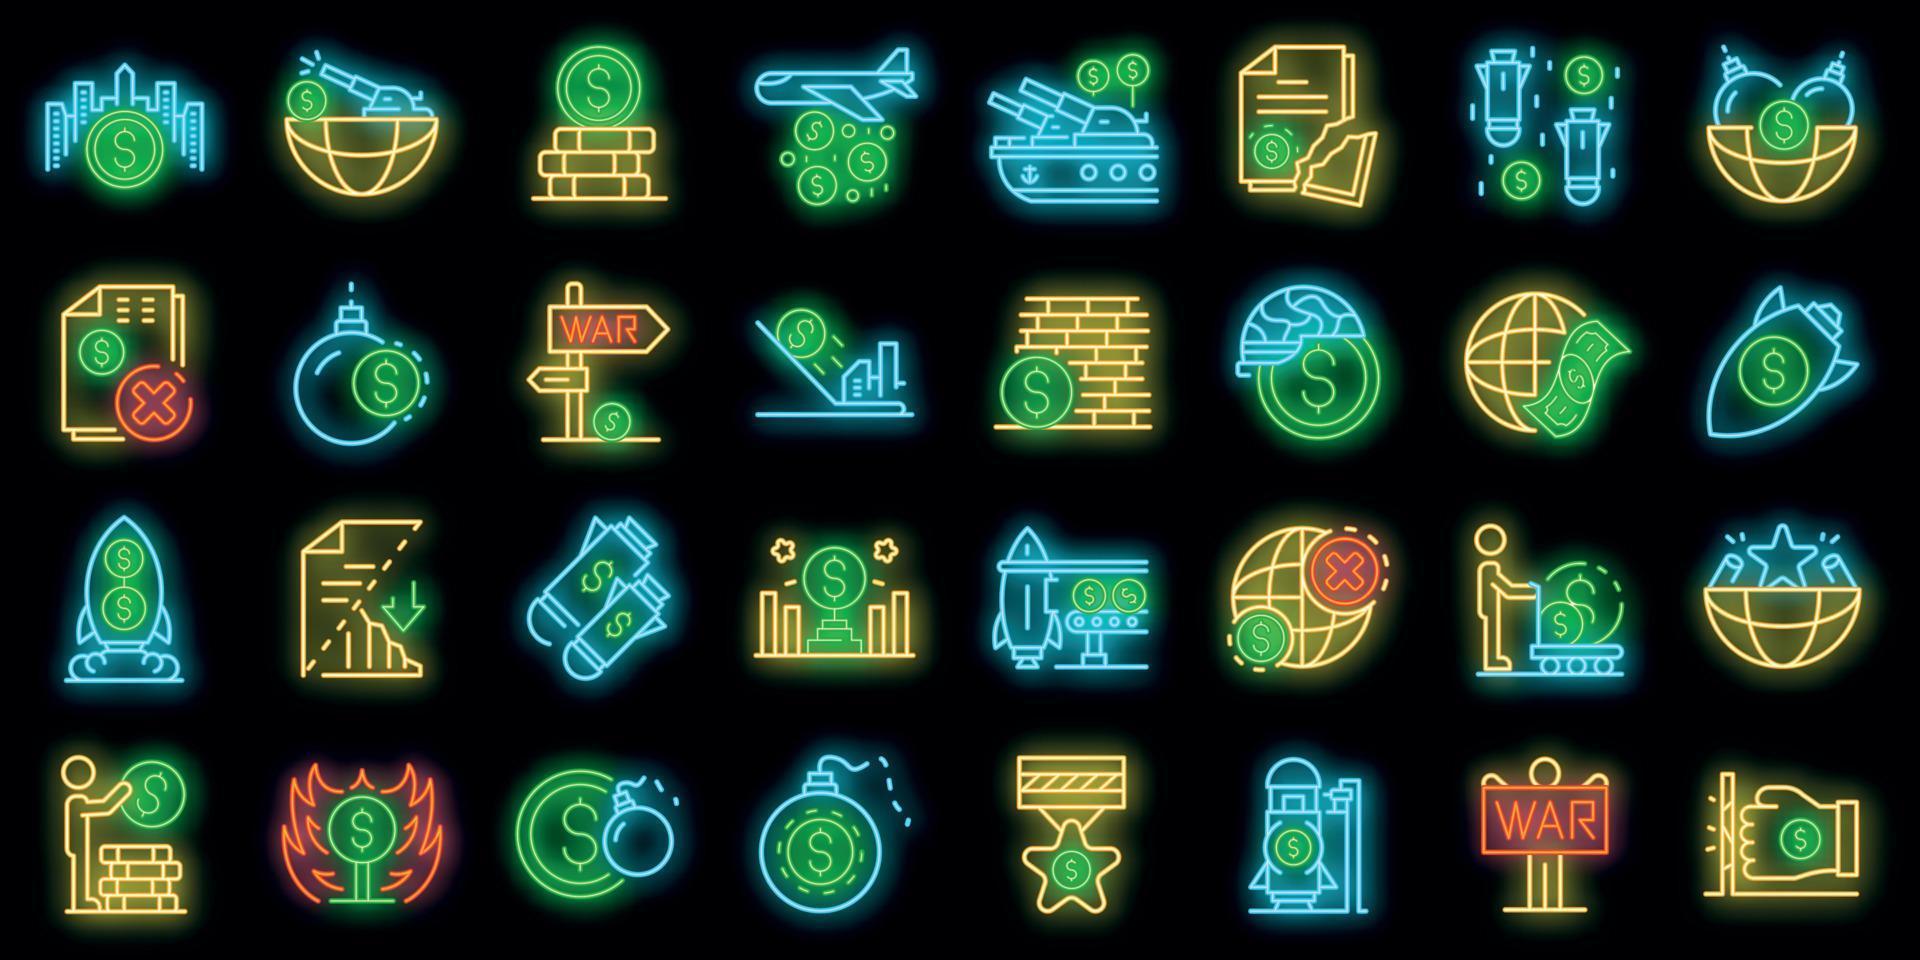 Trade war icons set vector neon